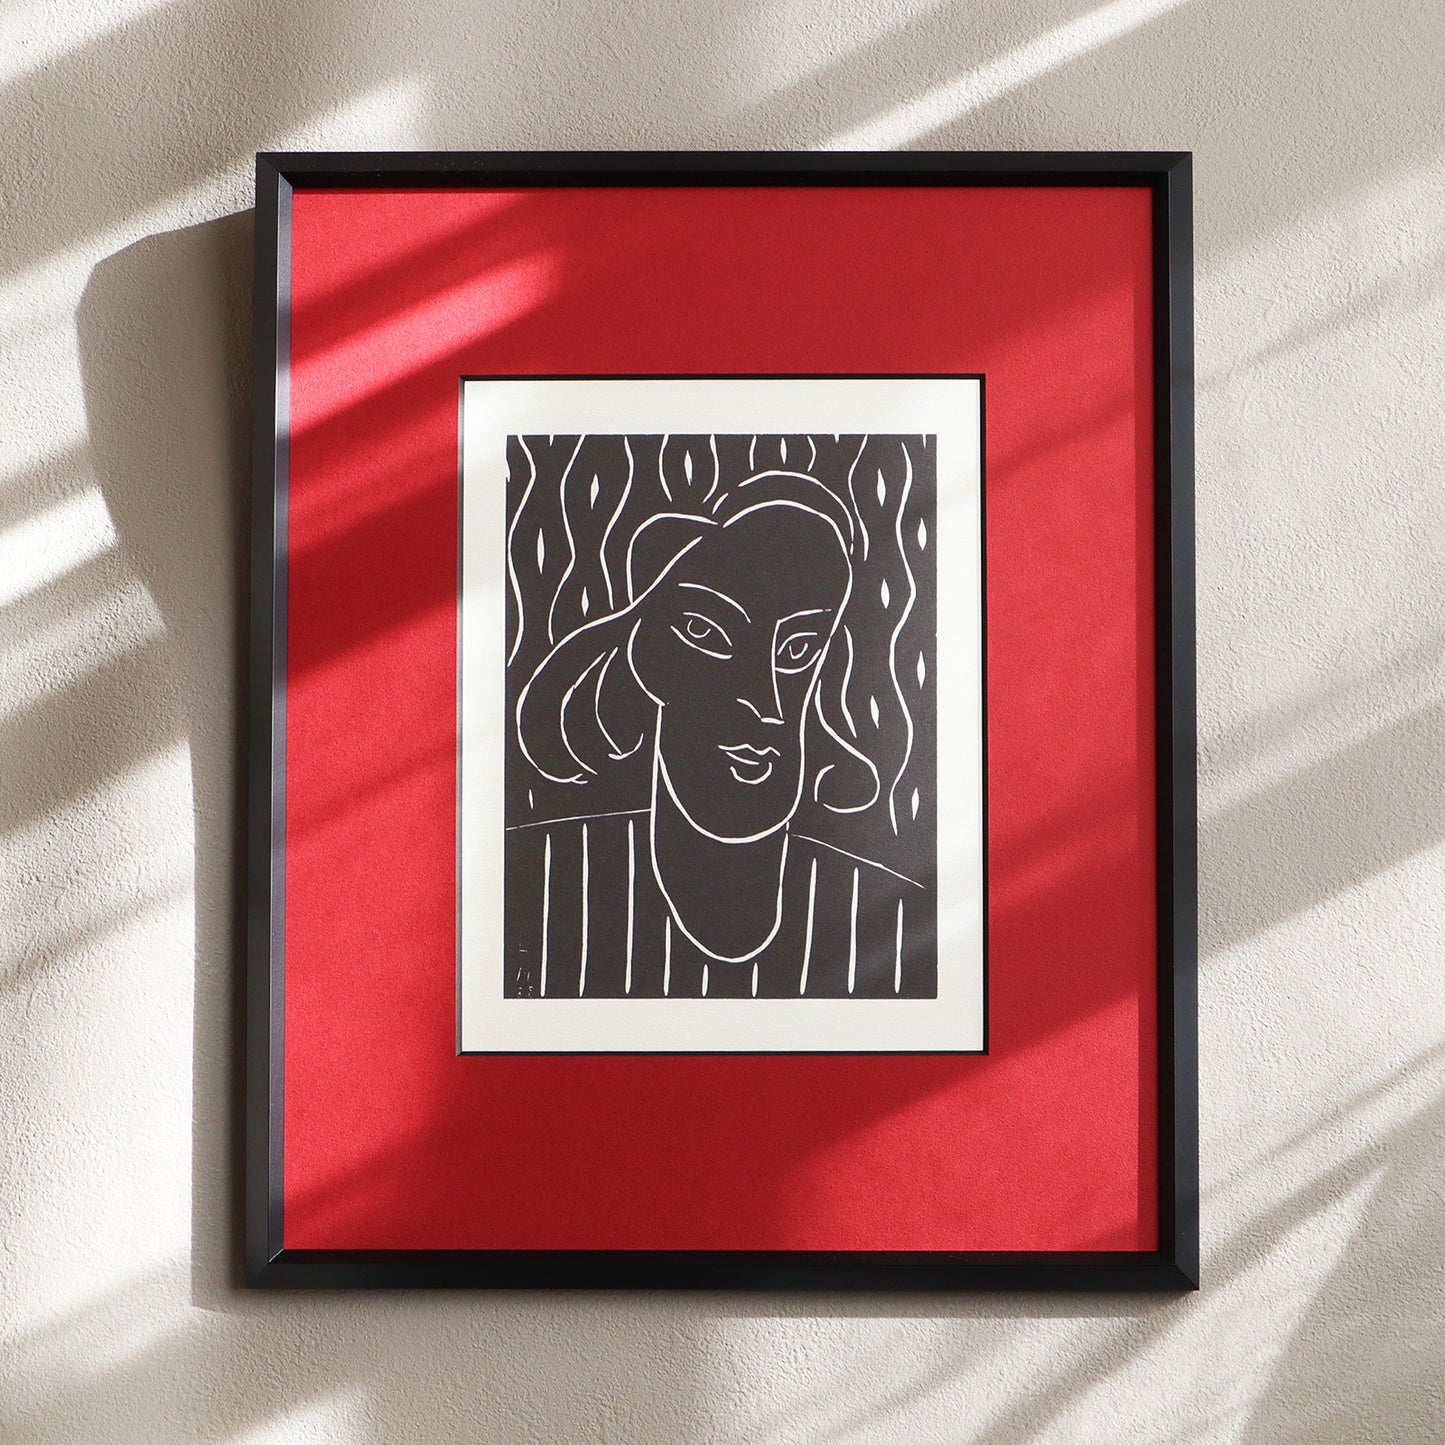 アンリ・マティス「女性 リノカット 1938」 アートポスター（フレーム付き） / Henri Matisse “Female head linocut 1938” Art Frame